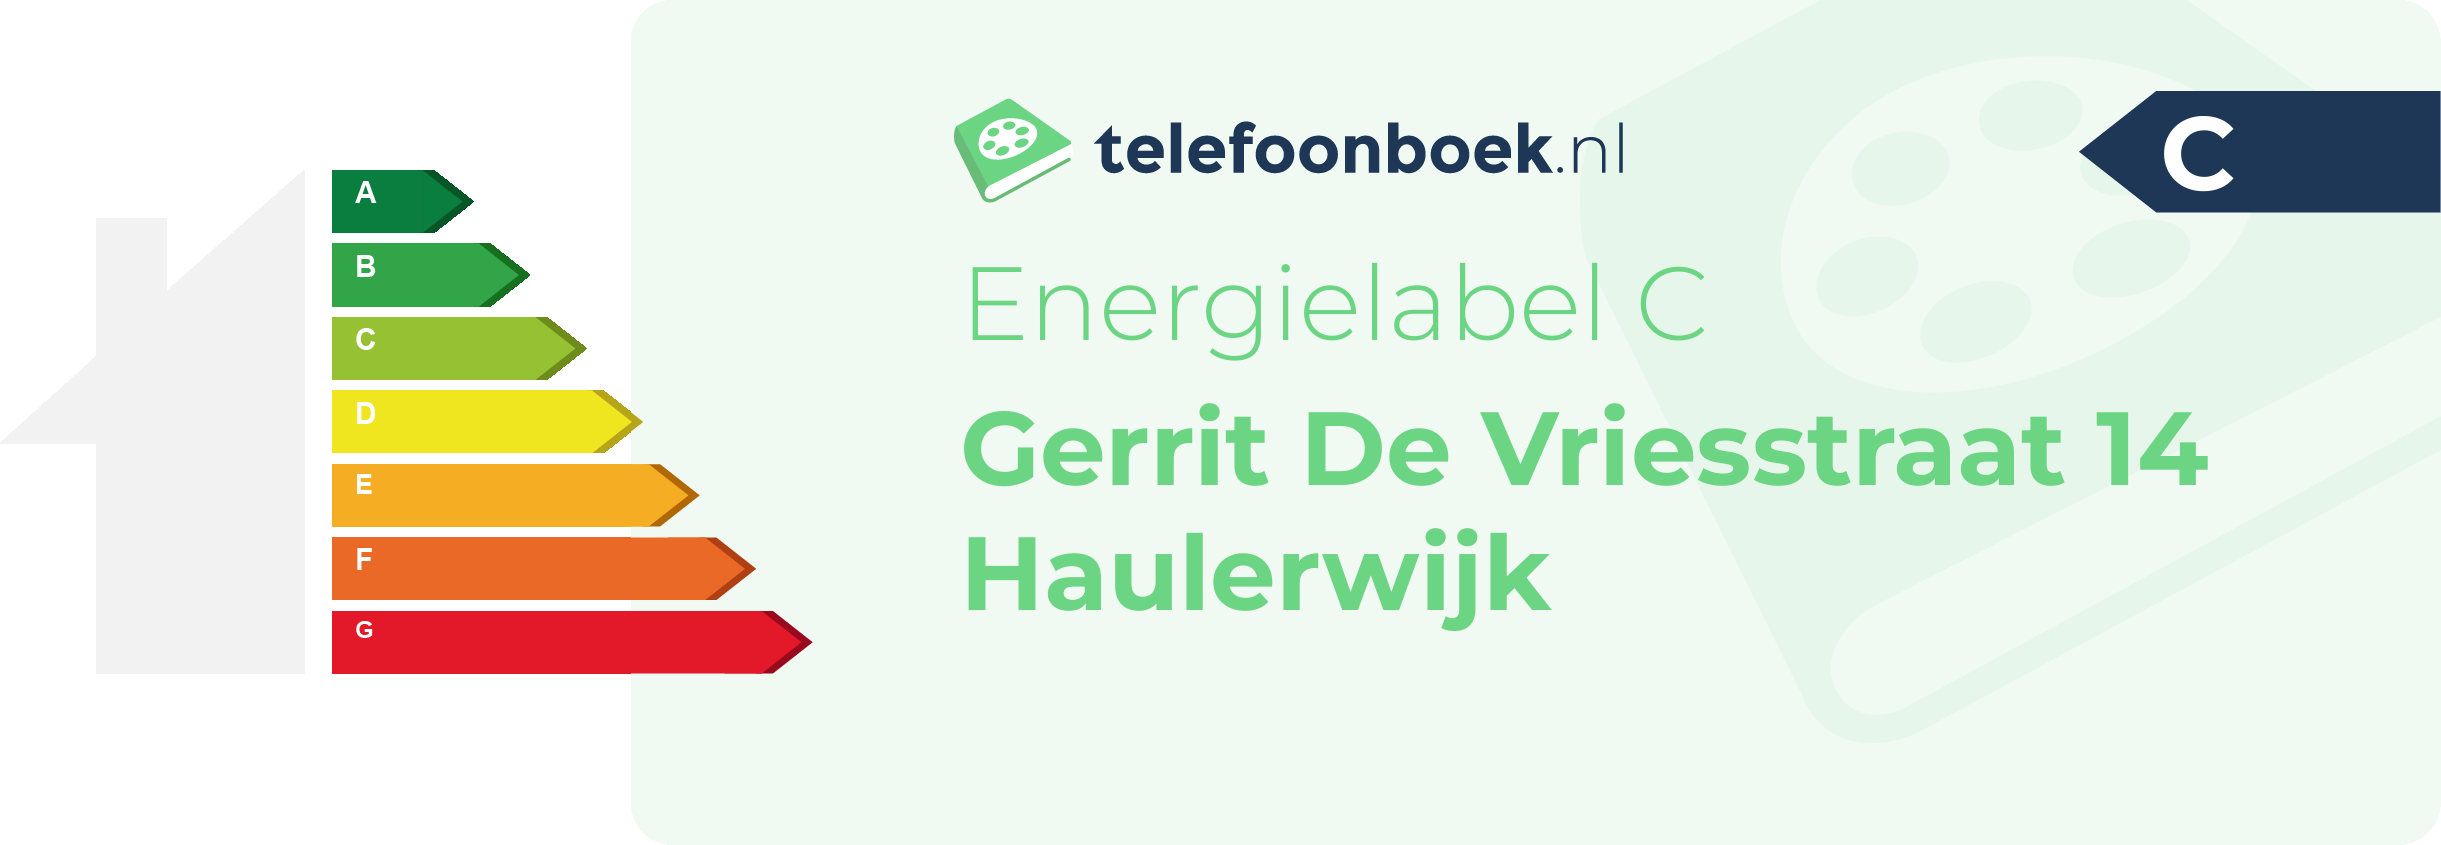 Energielabel Gerrit De Vriesstraat 14 Haulerwijk